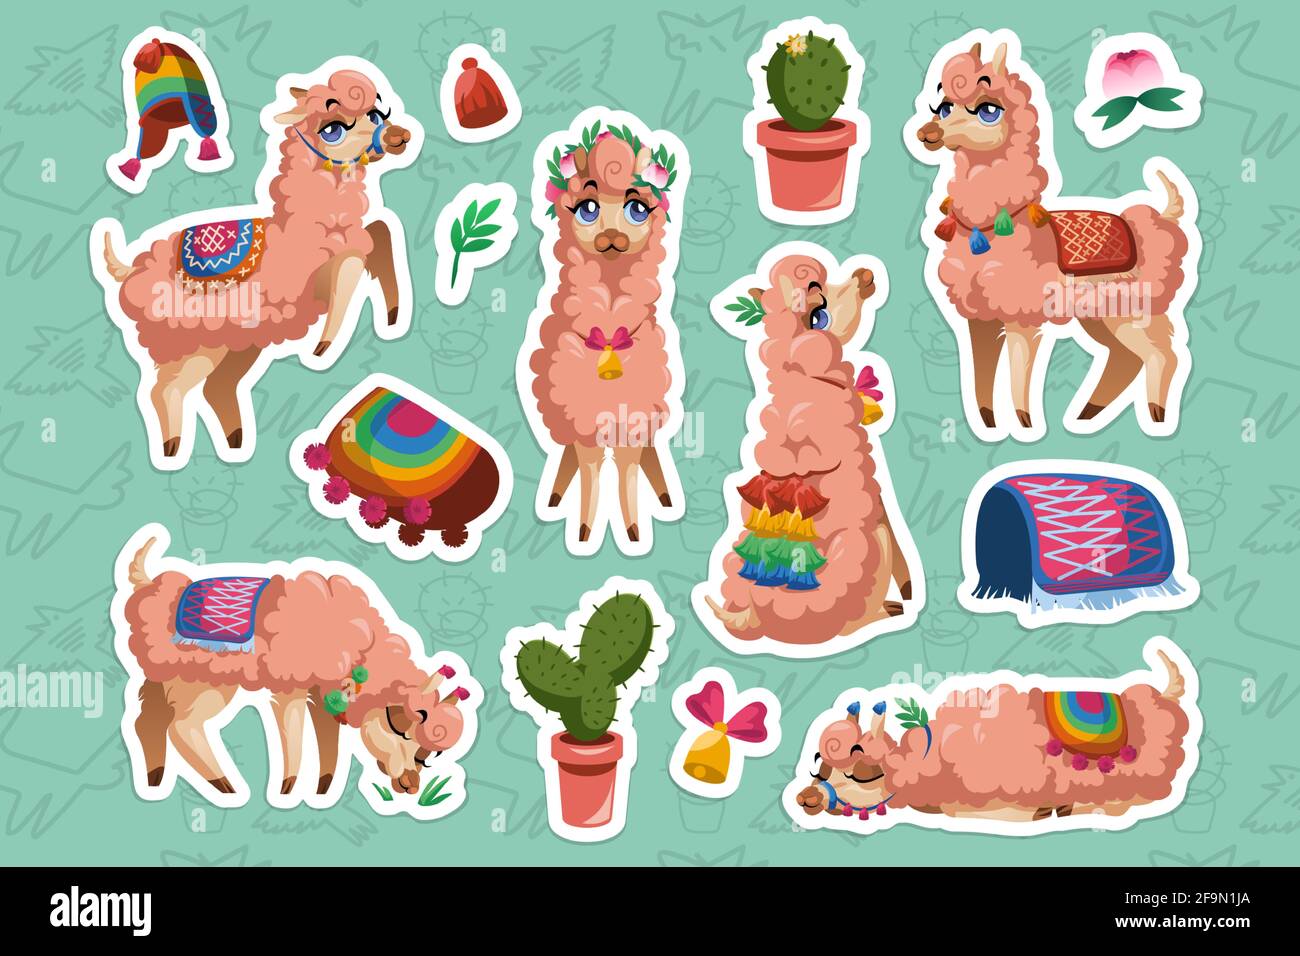 Set von Aufklebern mit Llama, Peru Alpaka Tier Zeichentrickfigur. Mexikanischer Lama Maskottchen mit niedlichem Gesicht tragen Quasten auf Ohren und Decke sitzen, schlafen, grasen und stehen isoliert ausgeschnittenen Flecken Stock Vektor